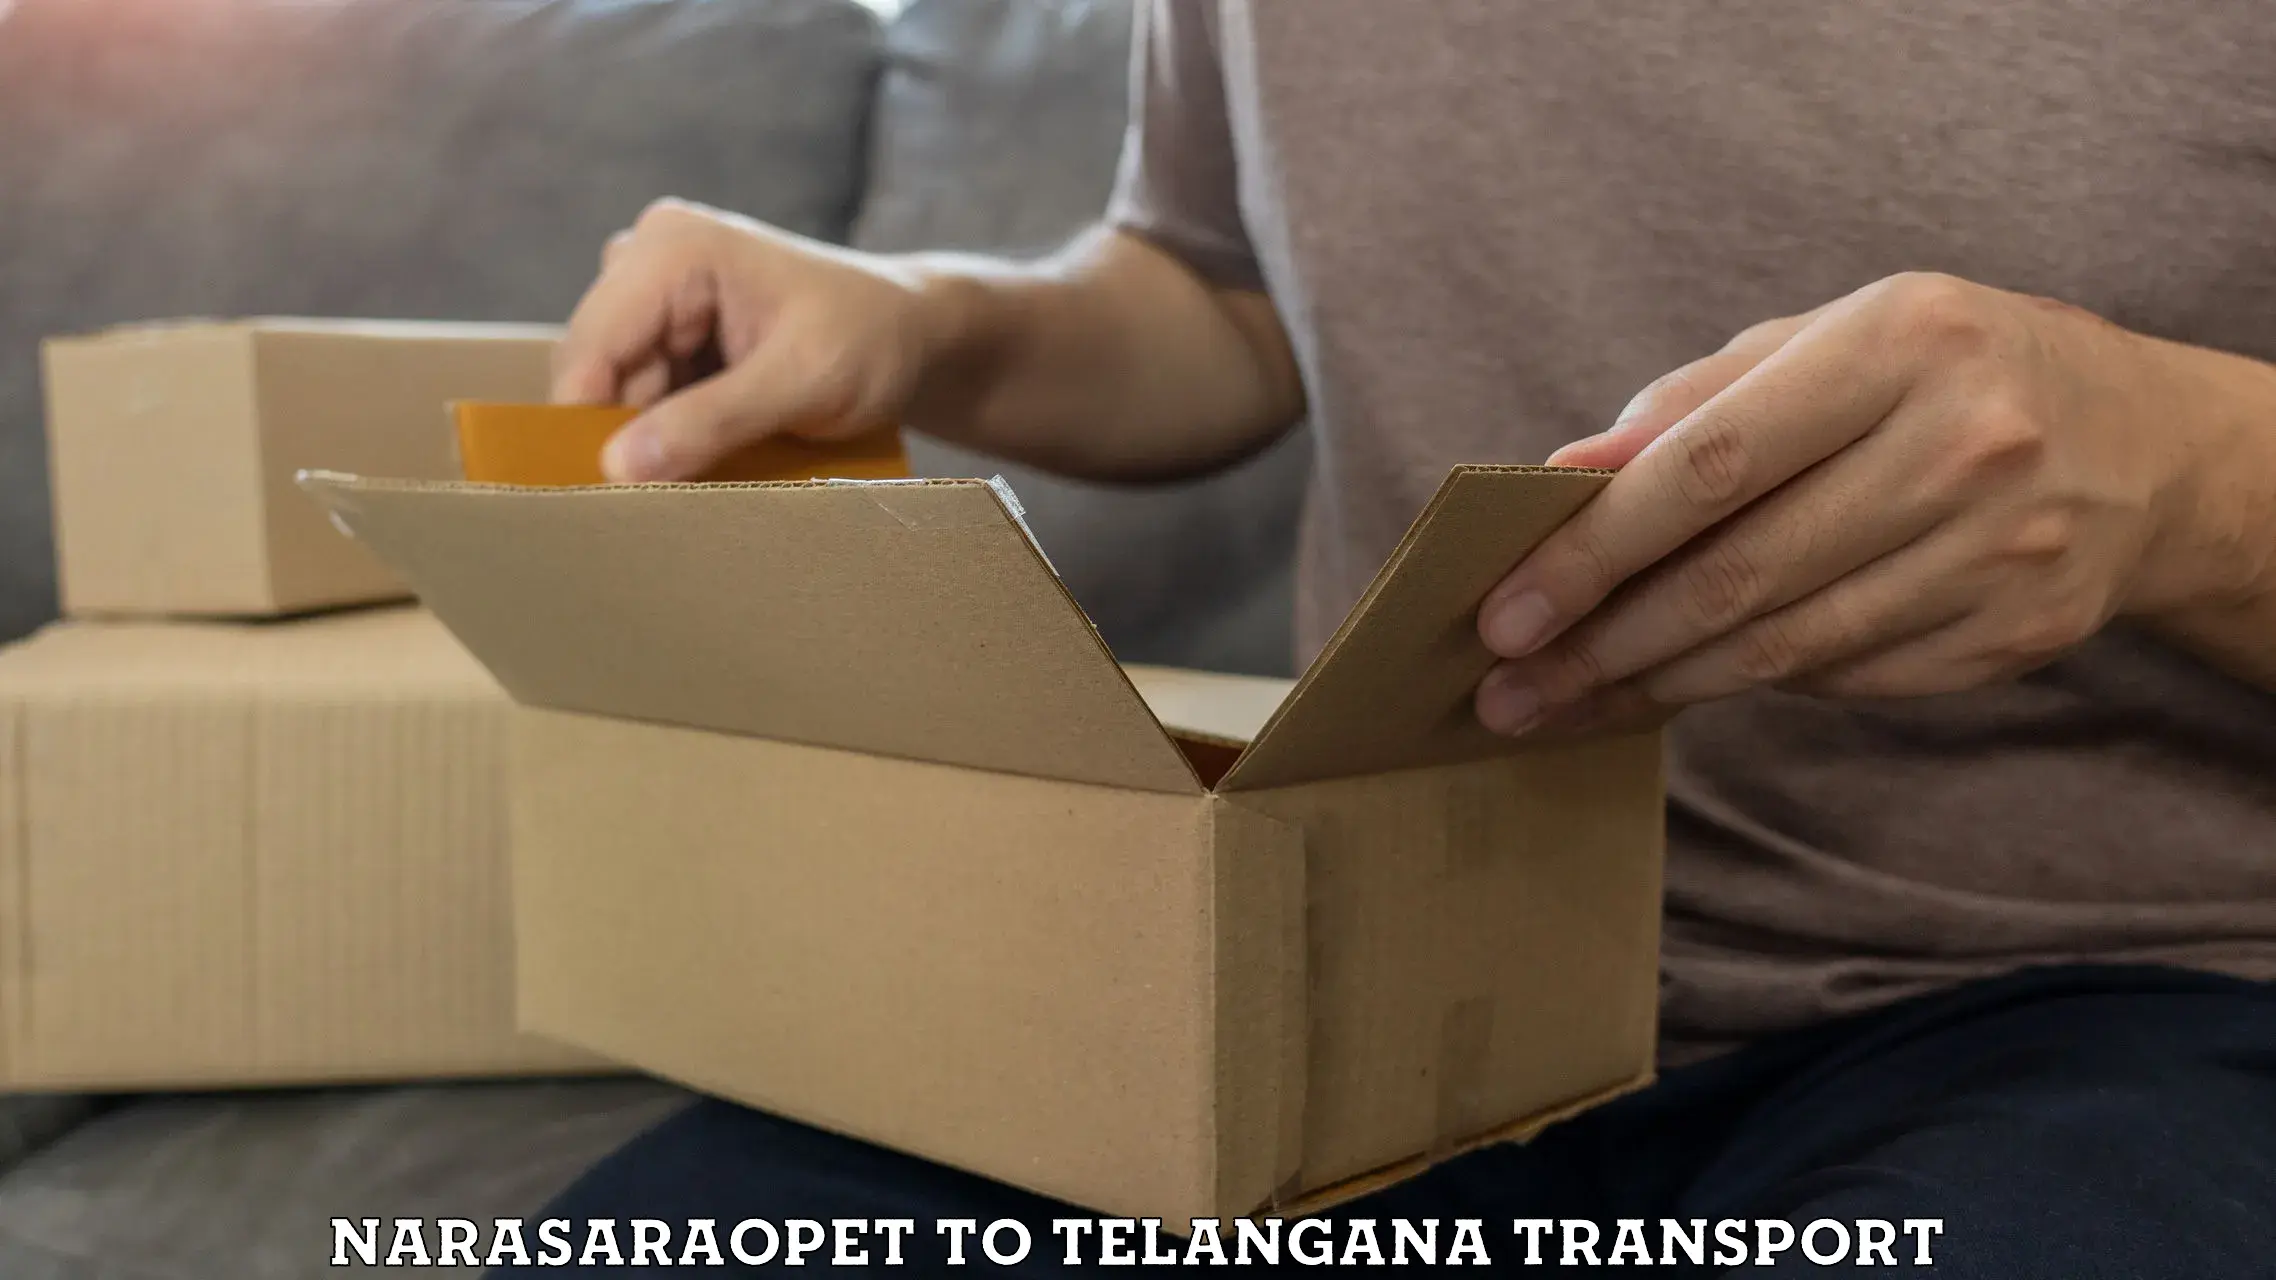 Express transport services Narasaraopet to Telangana